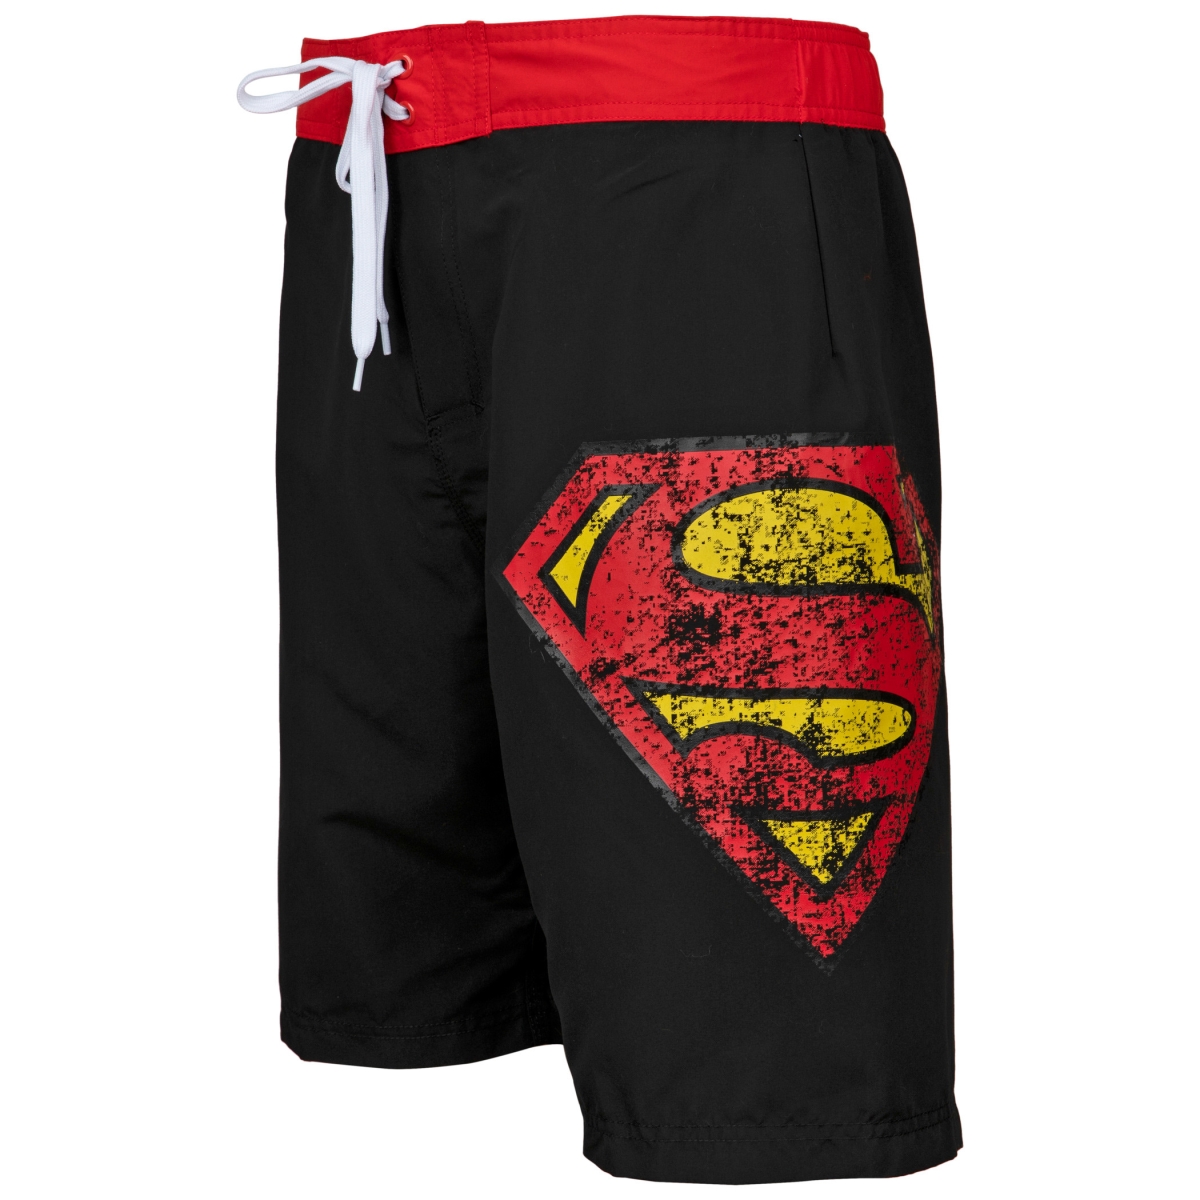 Picture of Superman 803465-small 28-30 Superman Symbol Swim Board Shorts, Black - Small 28-30